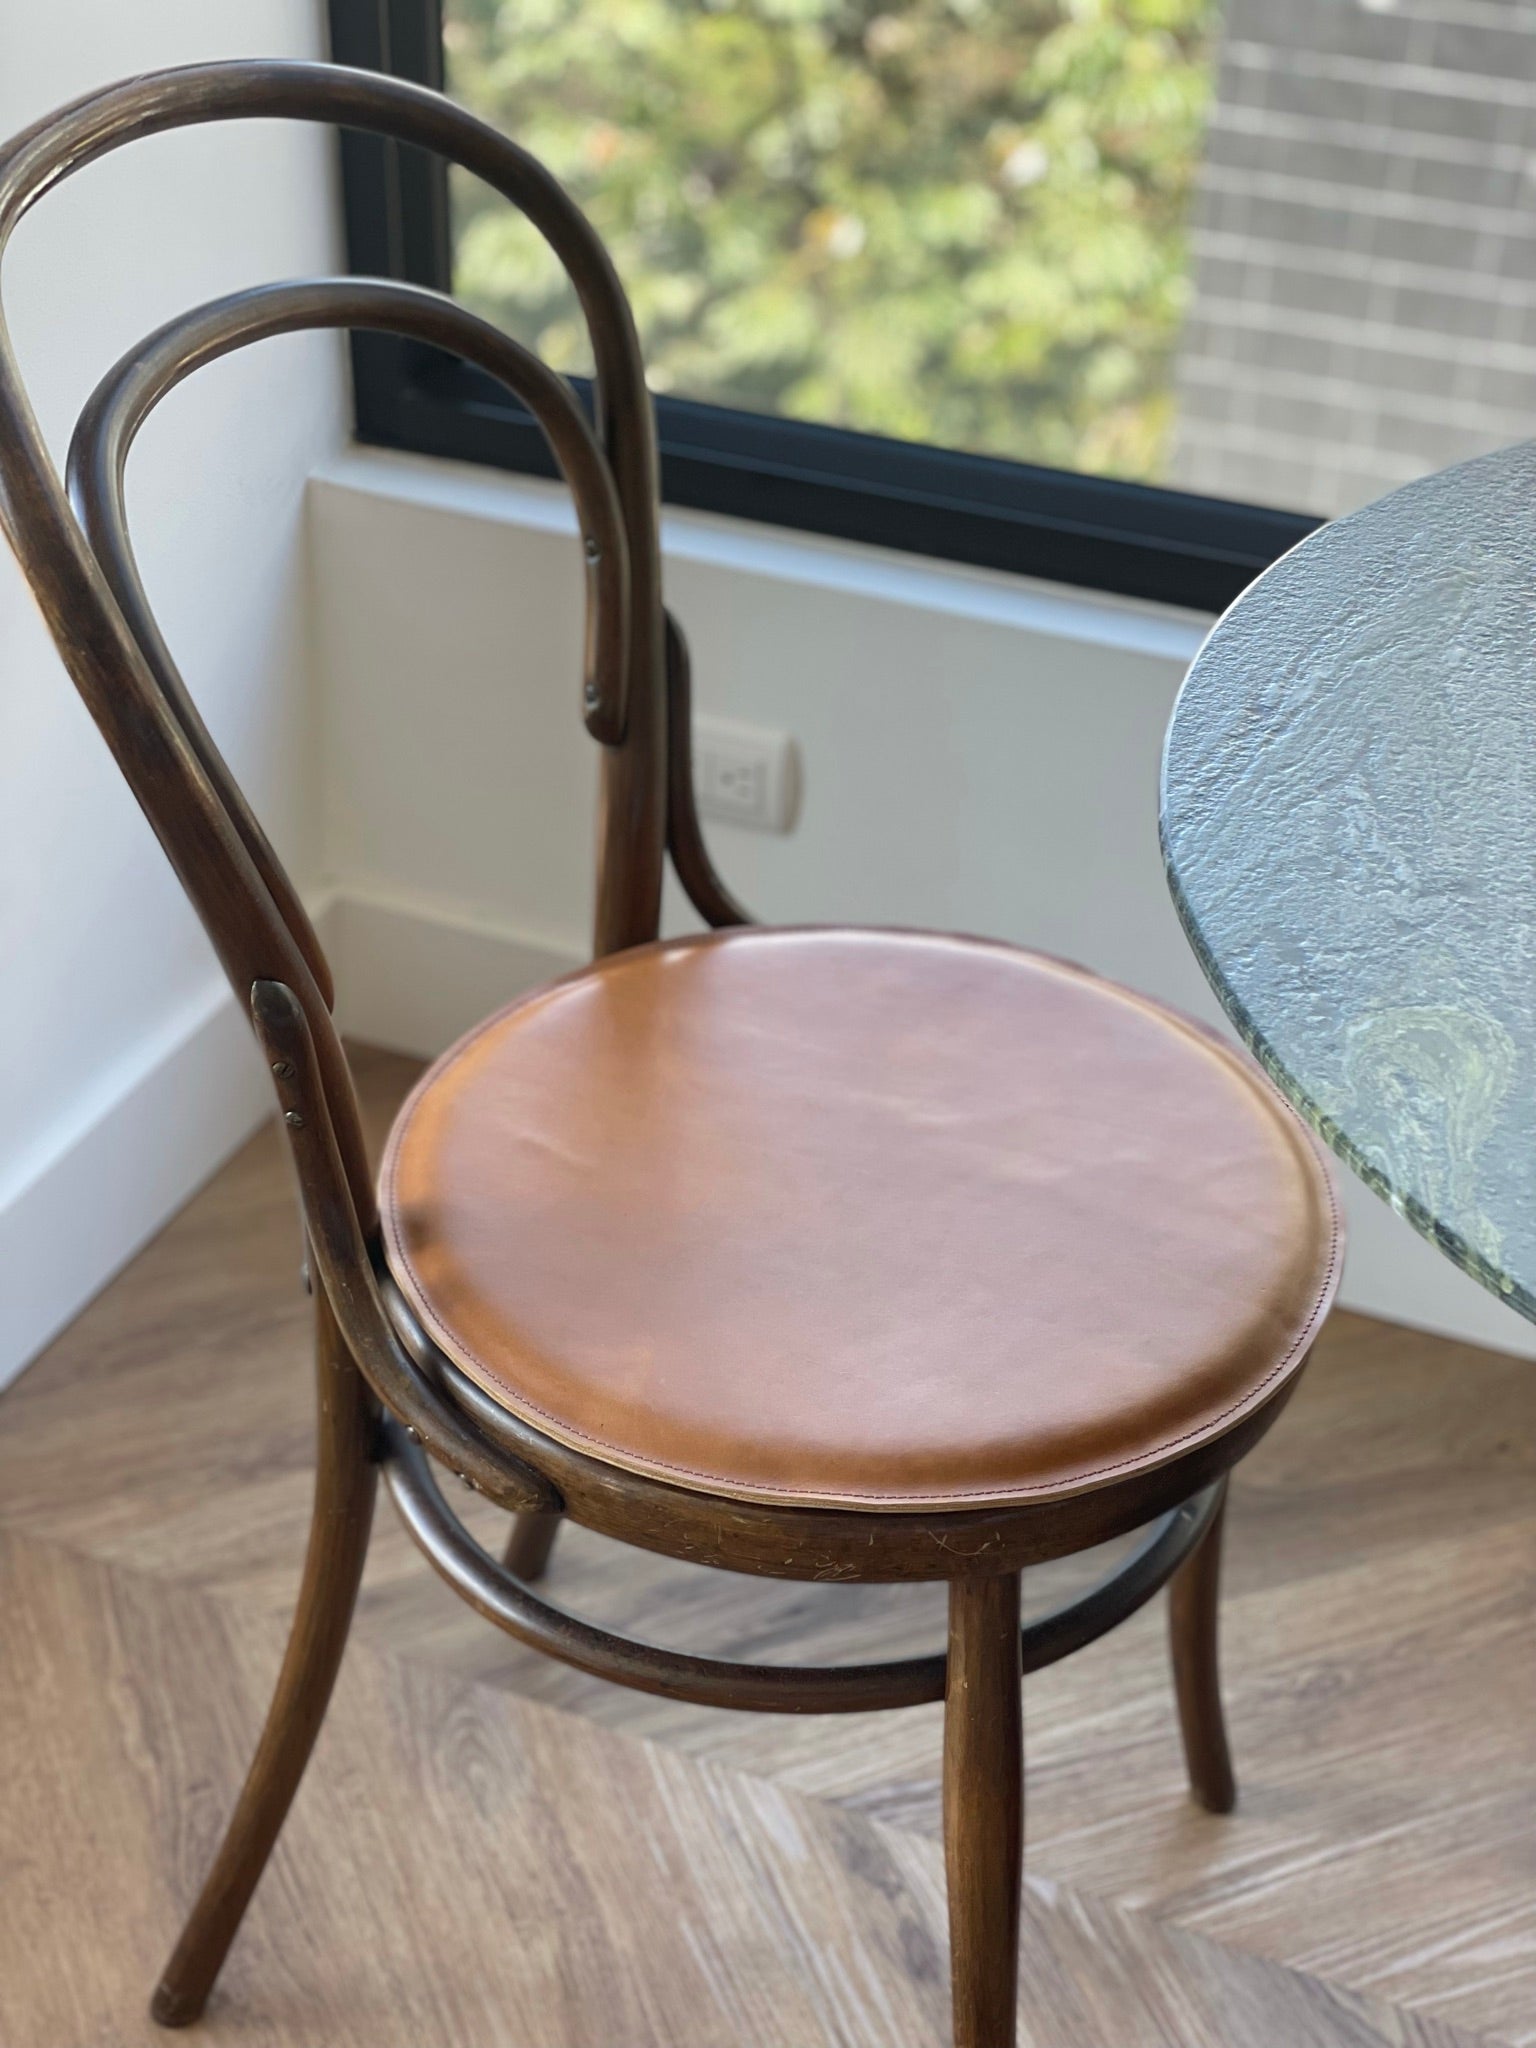 Leather Chair Cushion · Tan by Modoun Home Decor